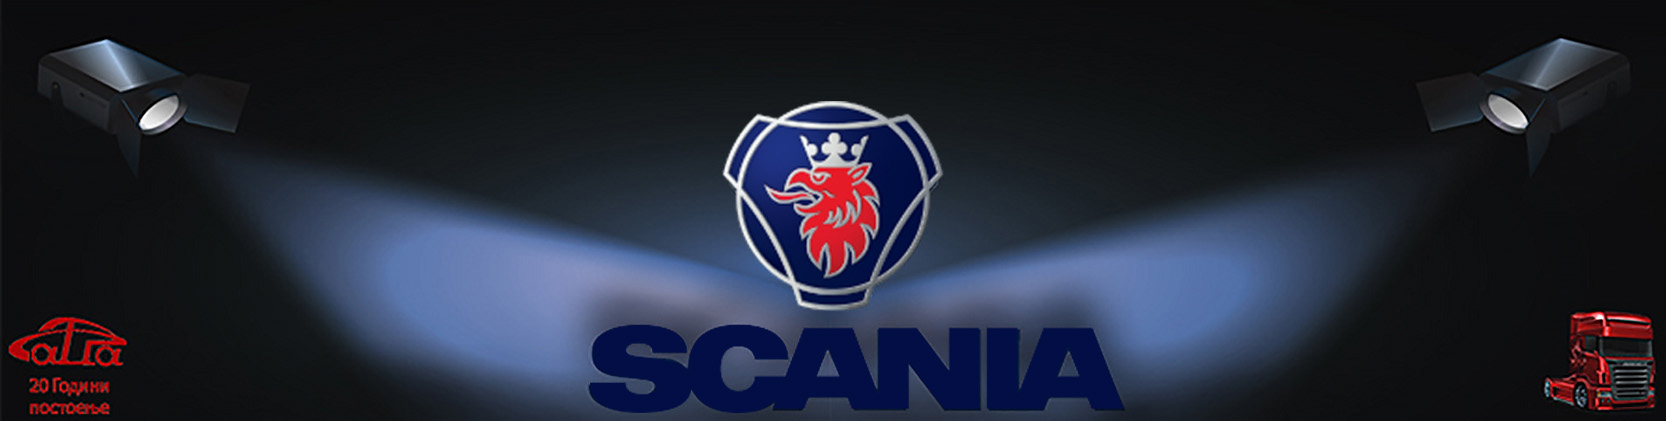 scania logo big image